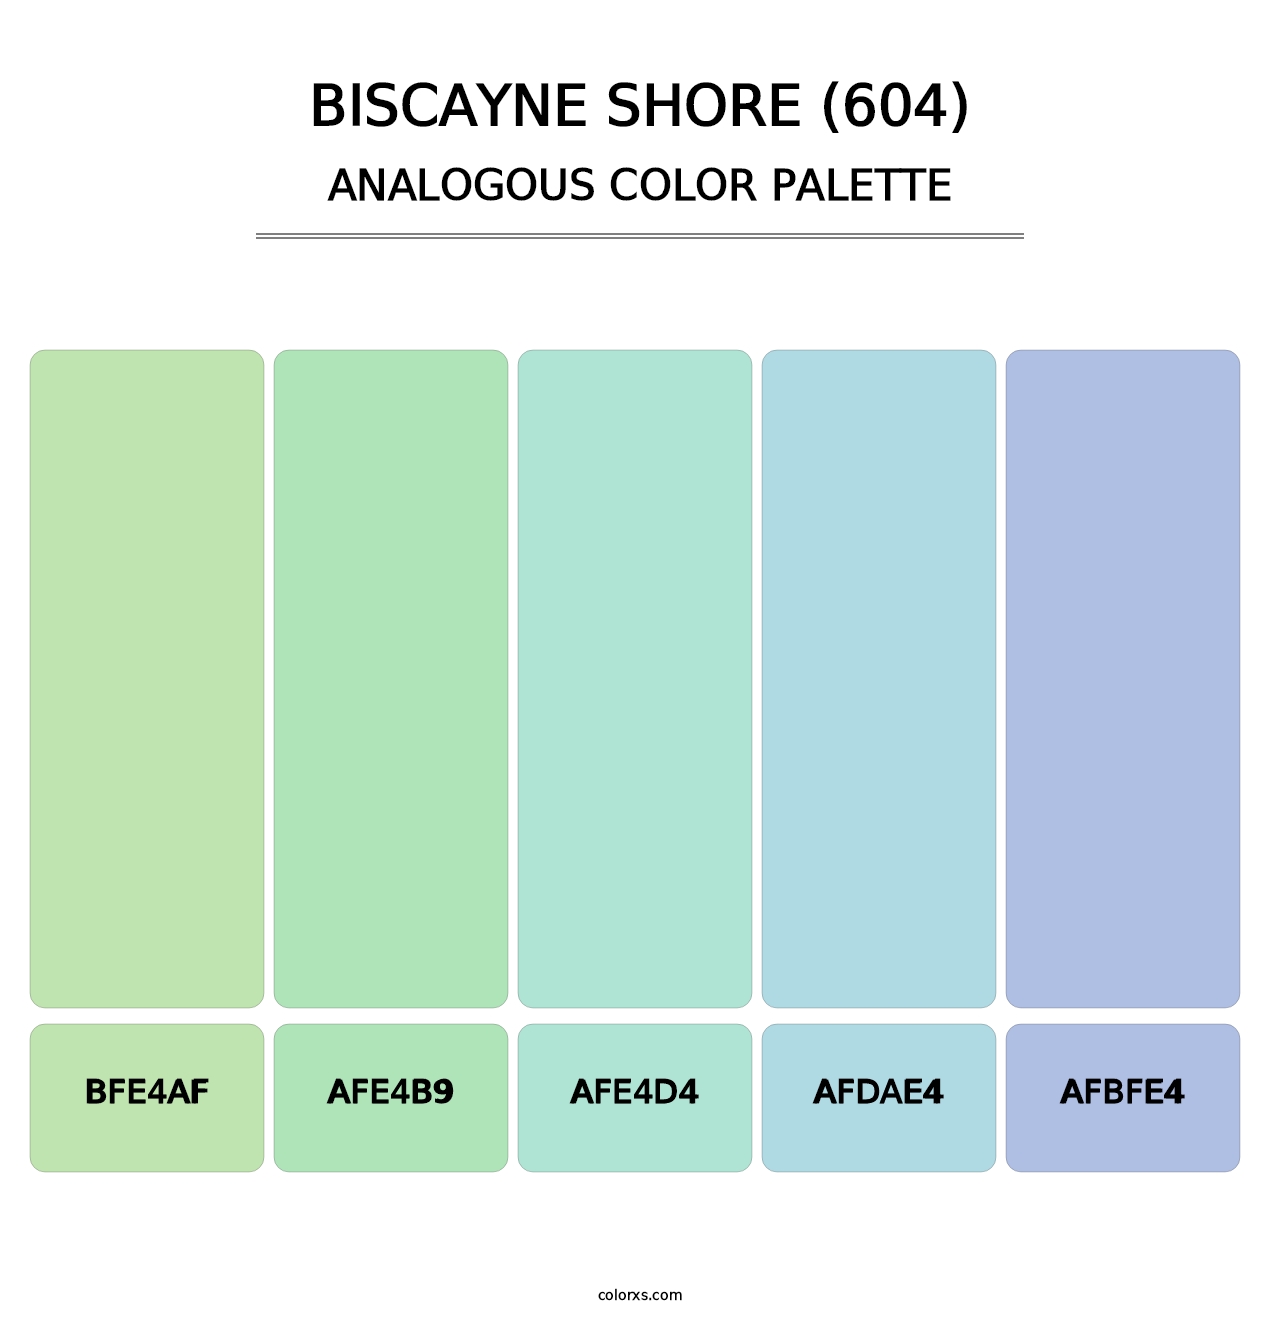 Biscayne Shore (604) - Analogous Color Palette